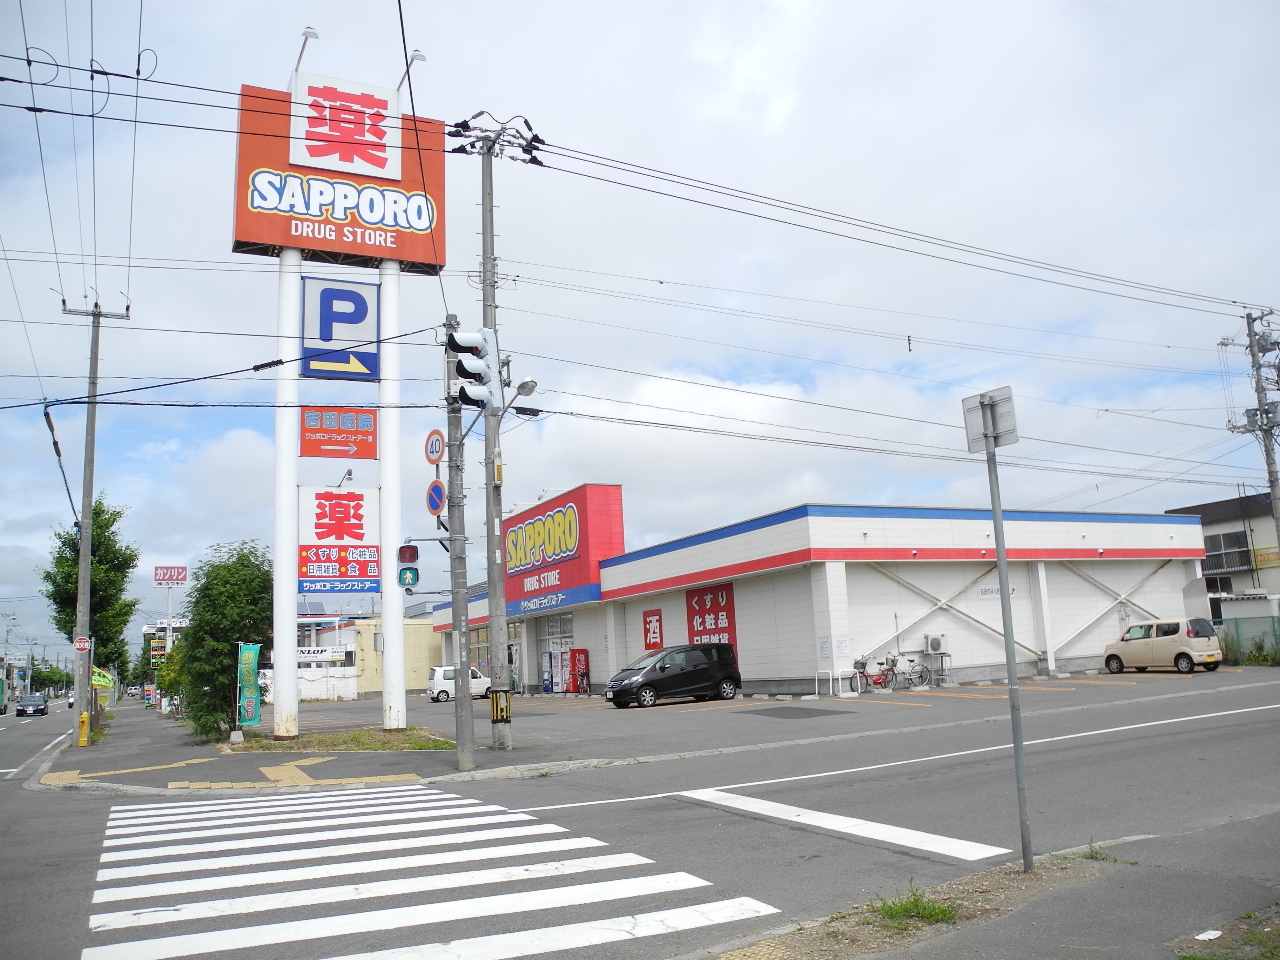 Dorakkusutoa. Sapporo drugstores Shinoro store (drugstore) to 200m